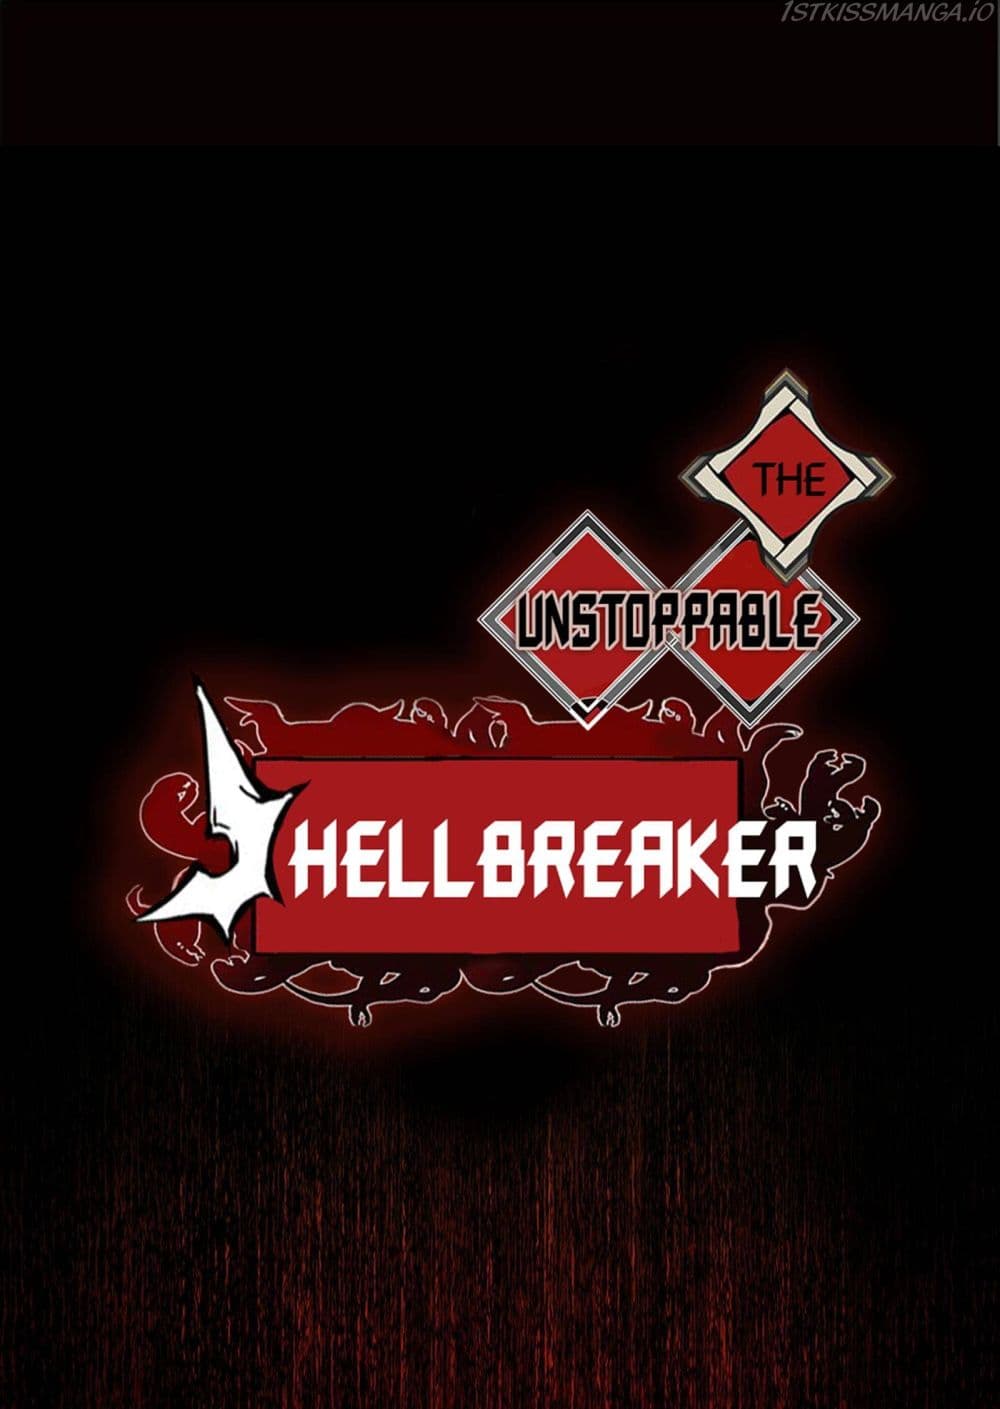 The Unstoppable Hellbreaker 21-21